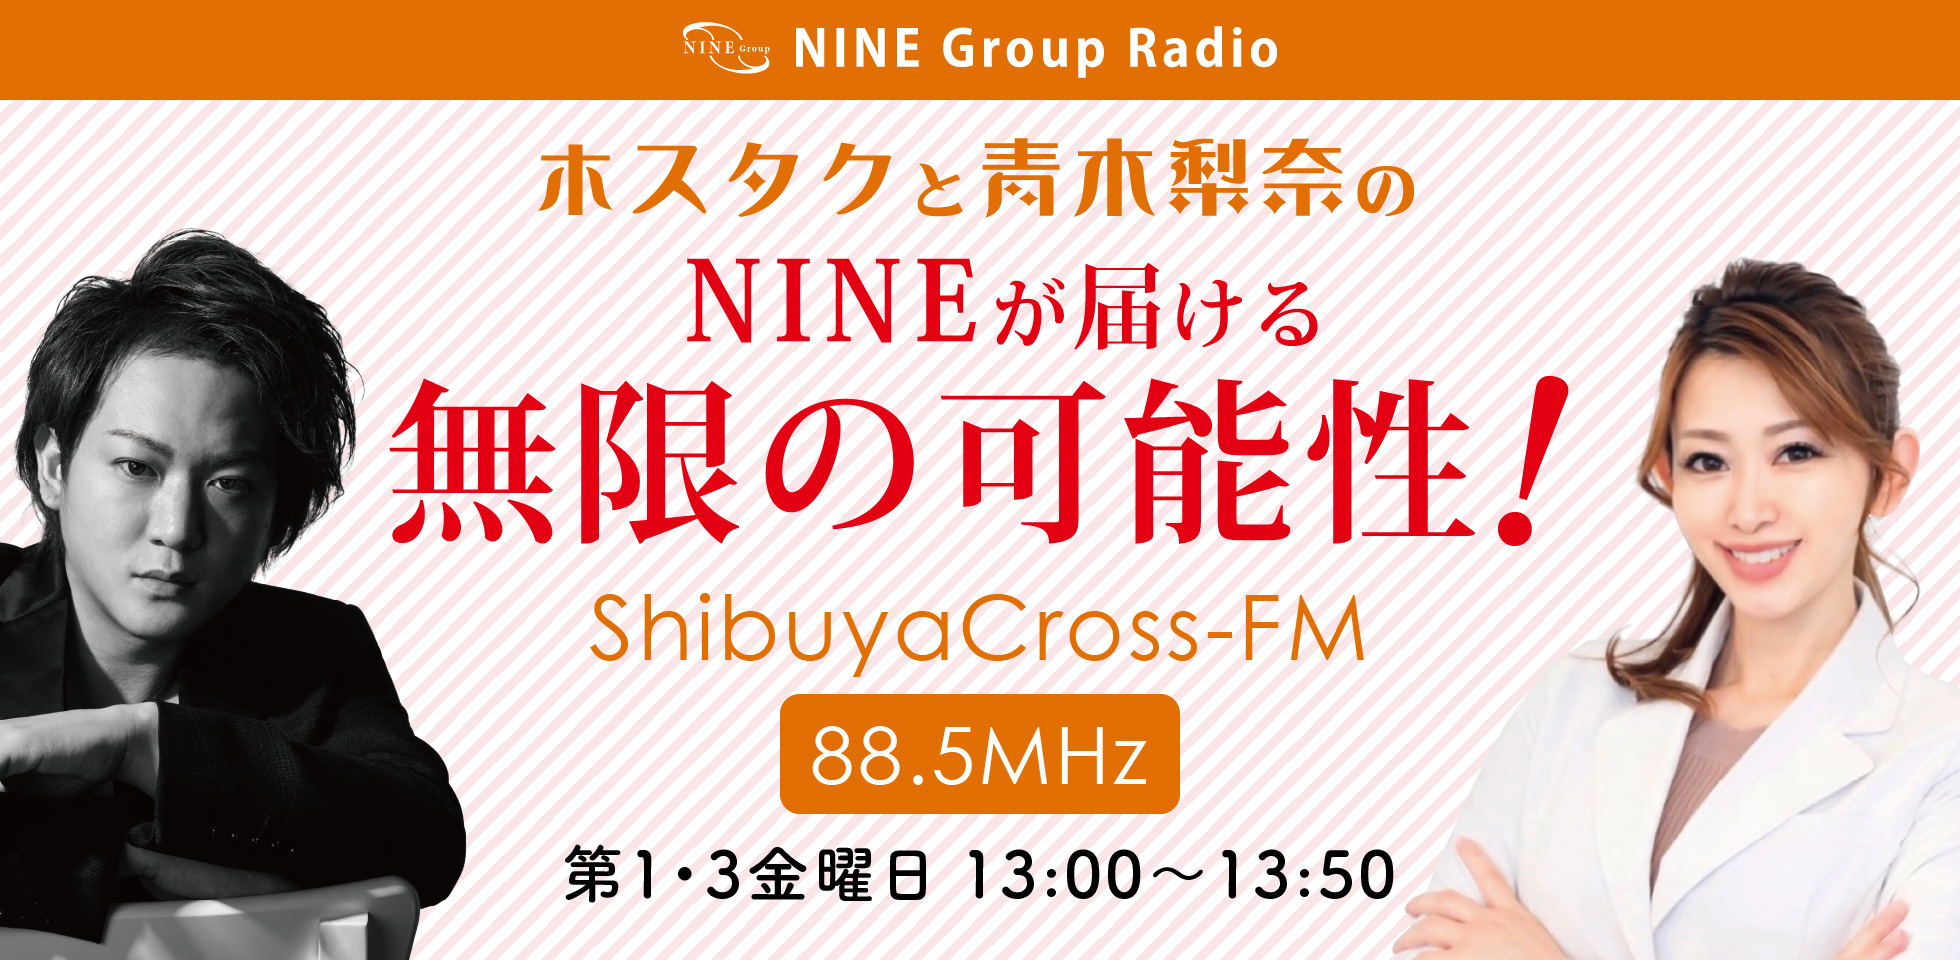 NINE GROUP Radio